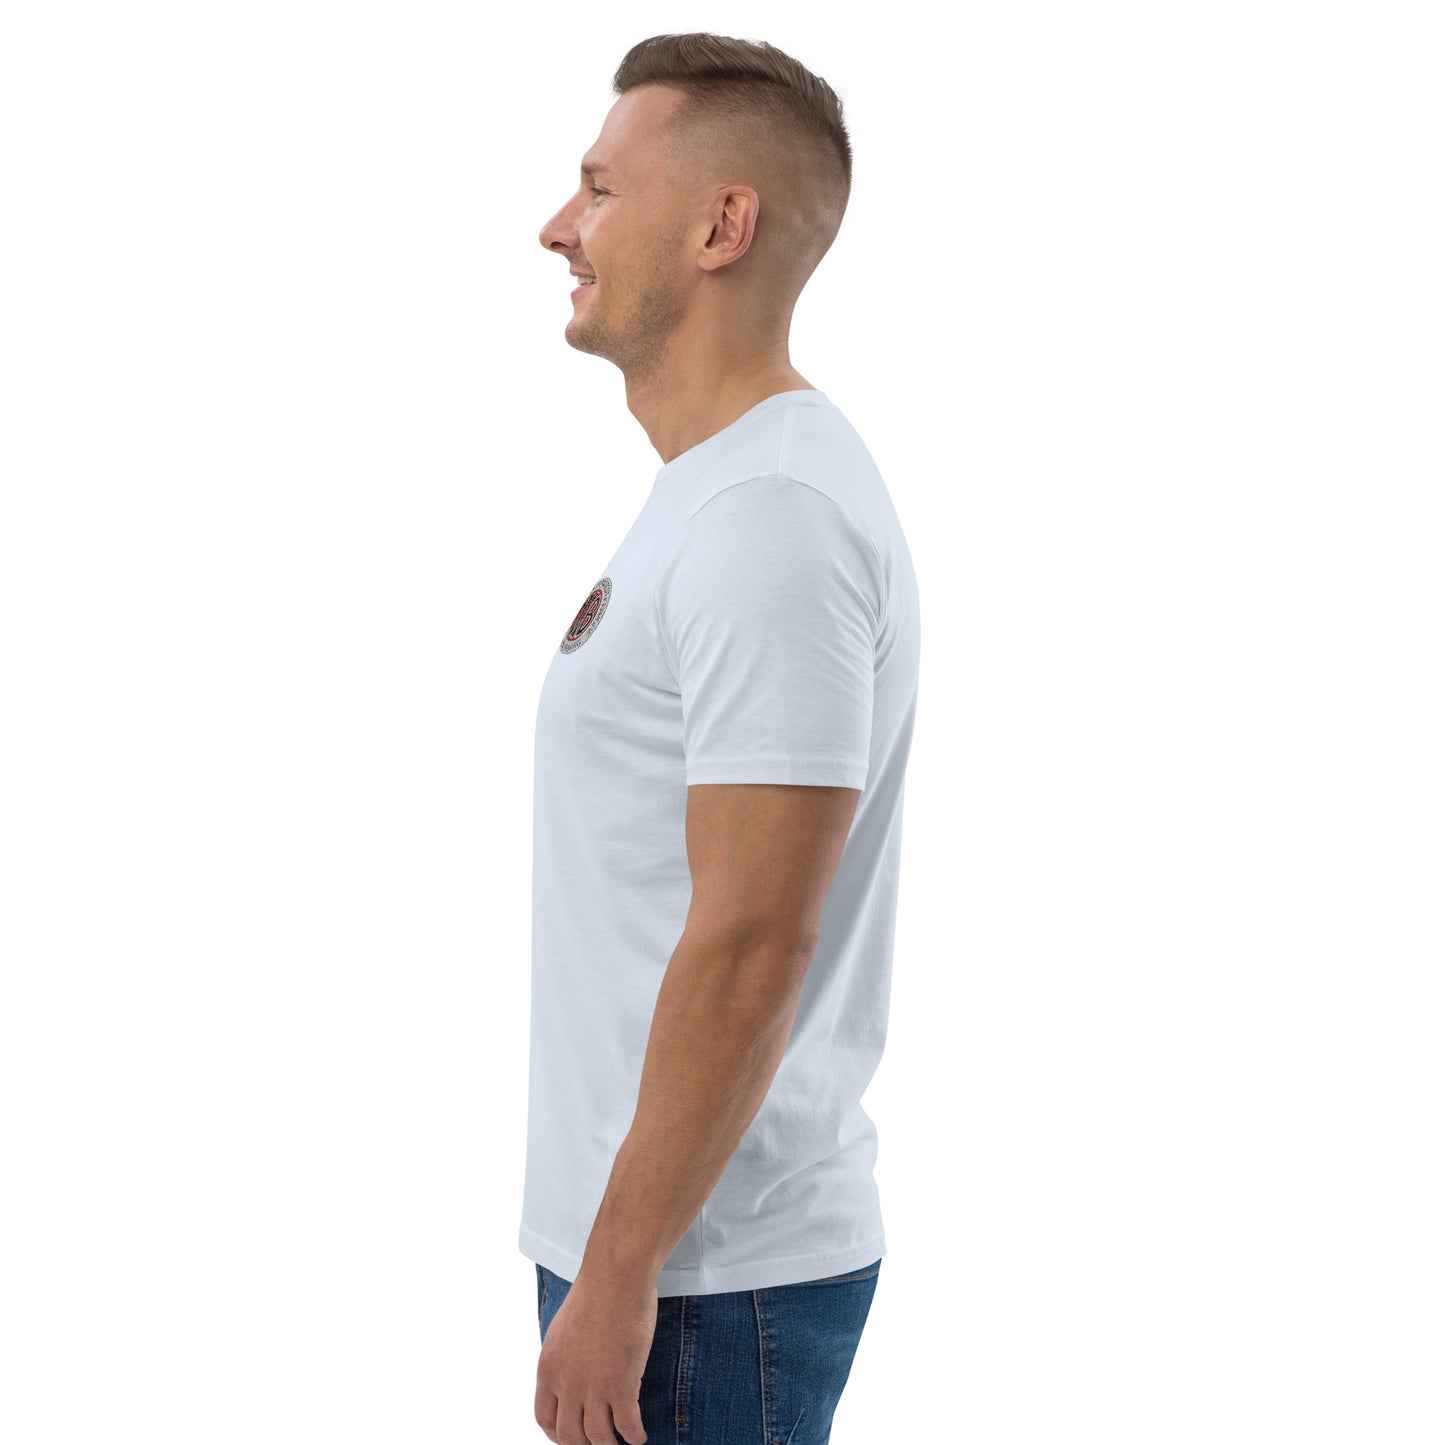 SVB Shirt │ T-Shirt Unisex-Bio-Baumwoll-T-Shirt